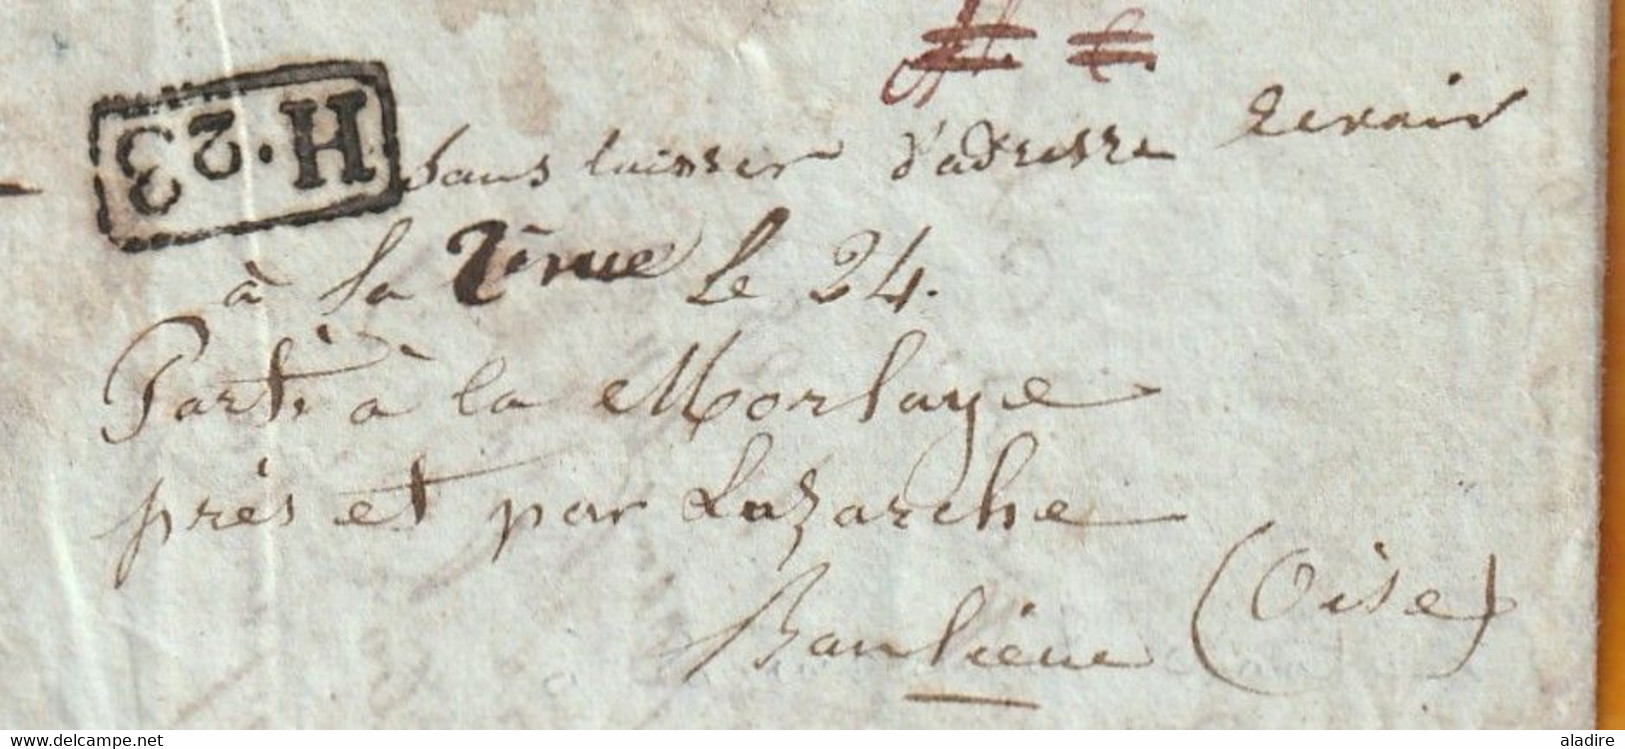 1837  - Lettre pliée avec corresp amicale de 3 p de RIVES, Isère vers PARIS - redirigée vers Luzarches, Val d'Oise